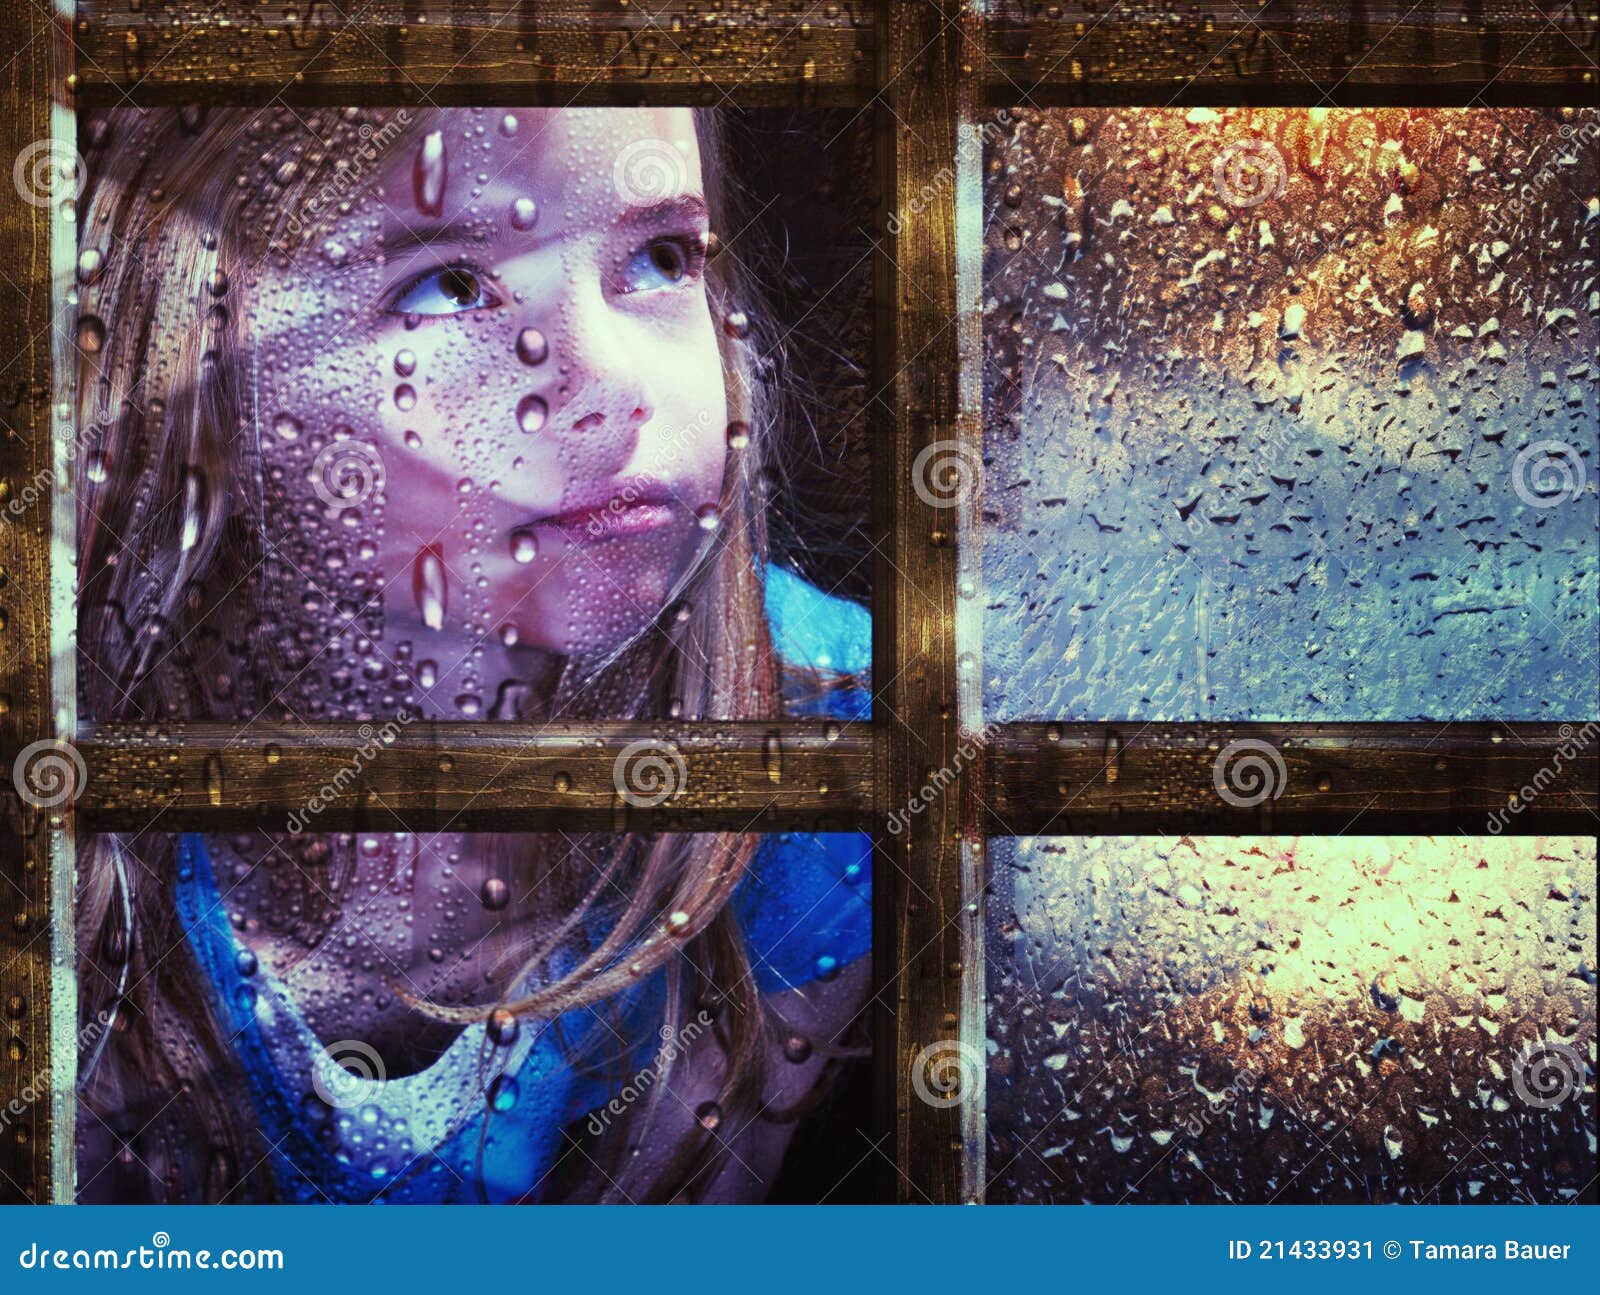 girl at window in rain